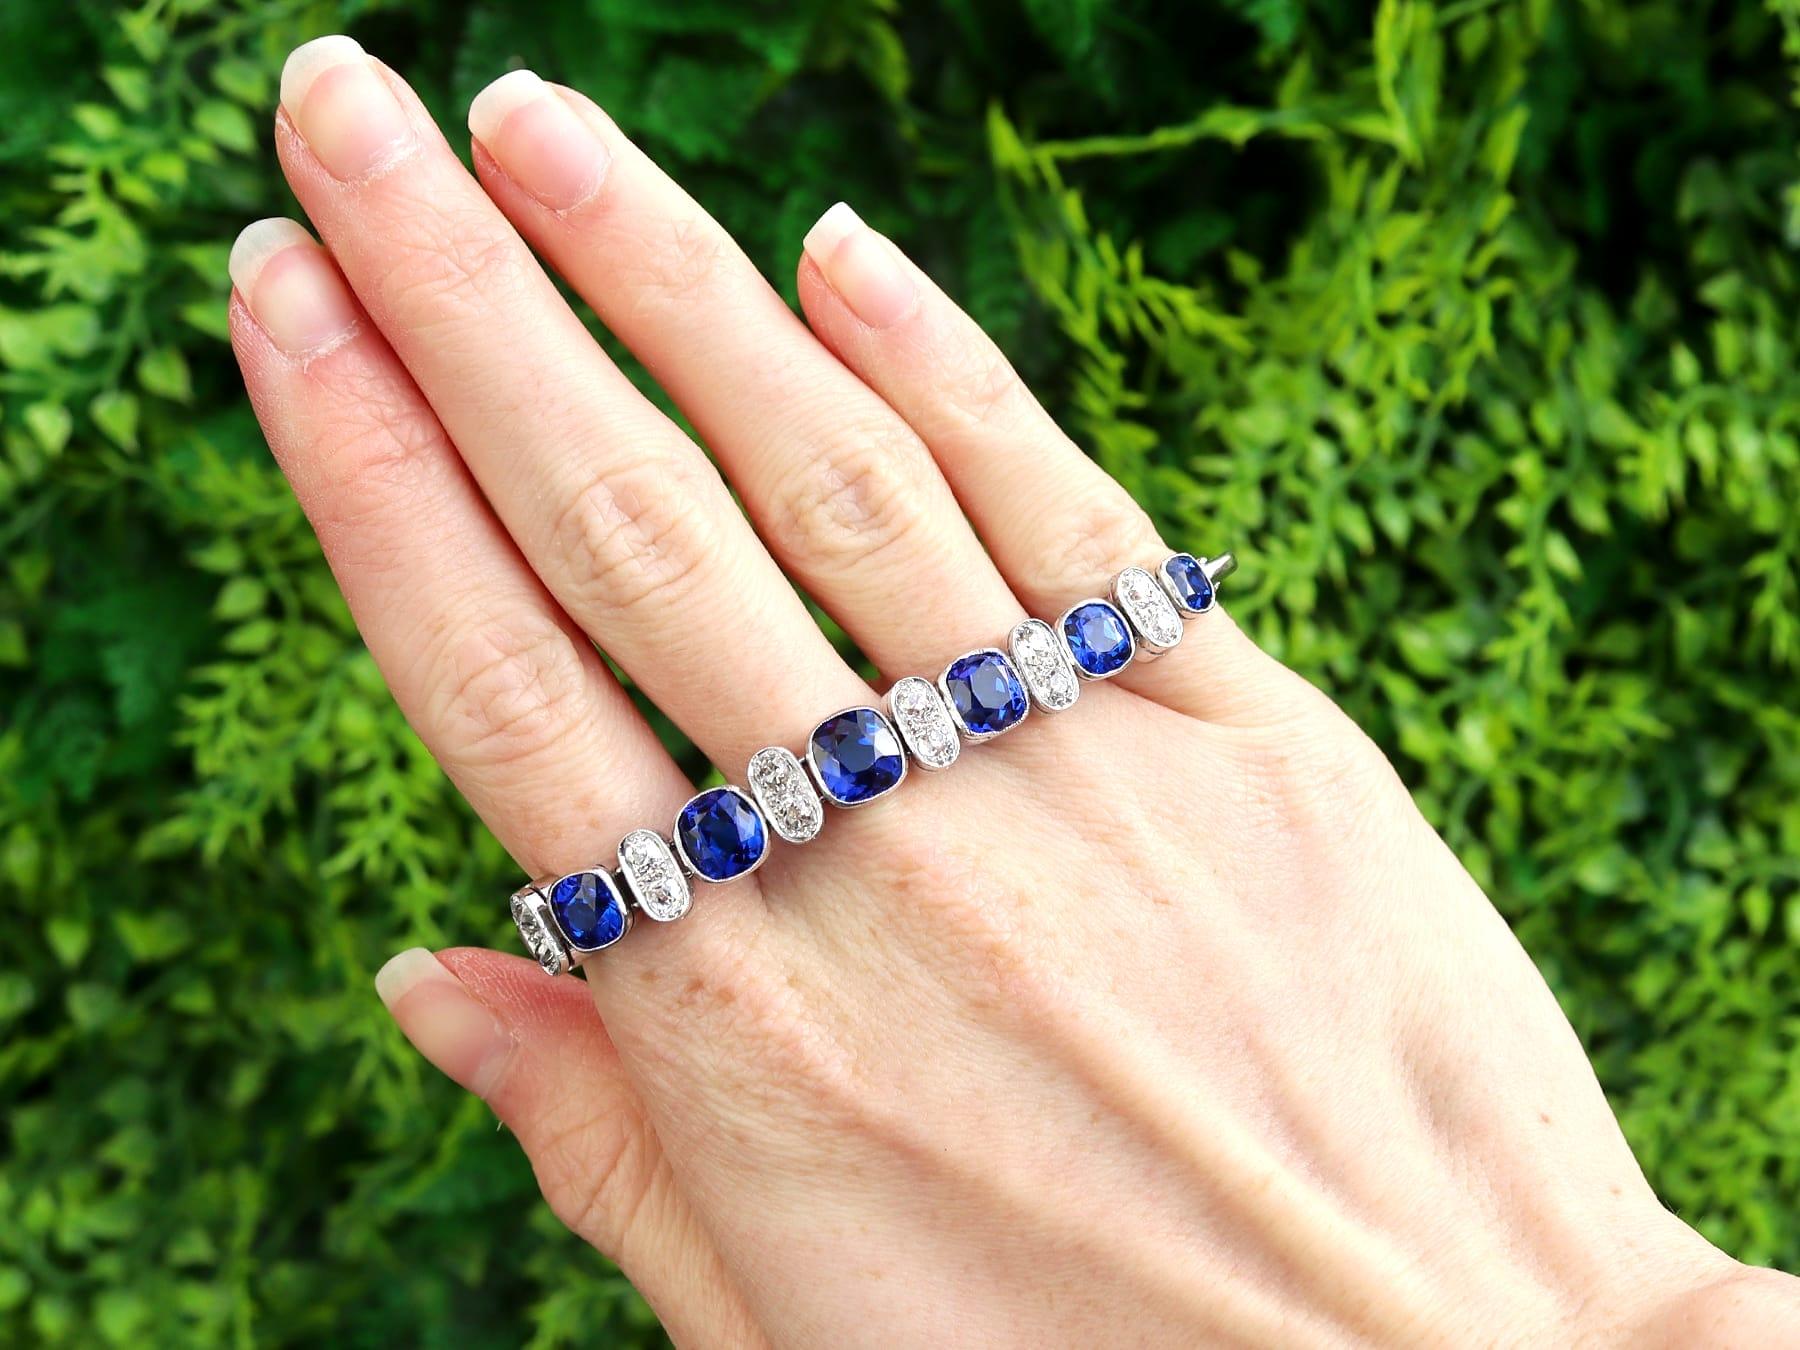 Magnifique bracelet en or blanc 18 carats, composé d'un spinelle bleu synthétique et d'un diamant de 2,04 carats. Ce bracelet fait partie de notre collection de bijoux en pierres précieuses et de bijoux de succession.

Ce magnifique bracelet ancien,